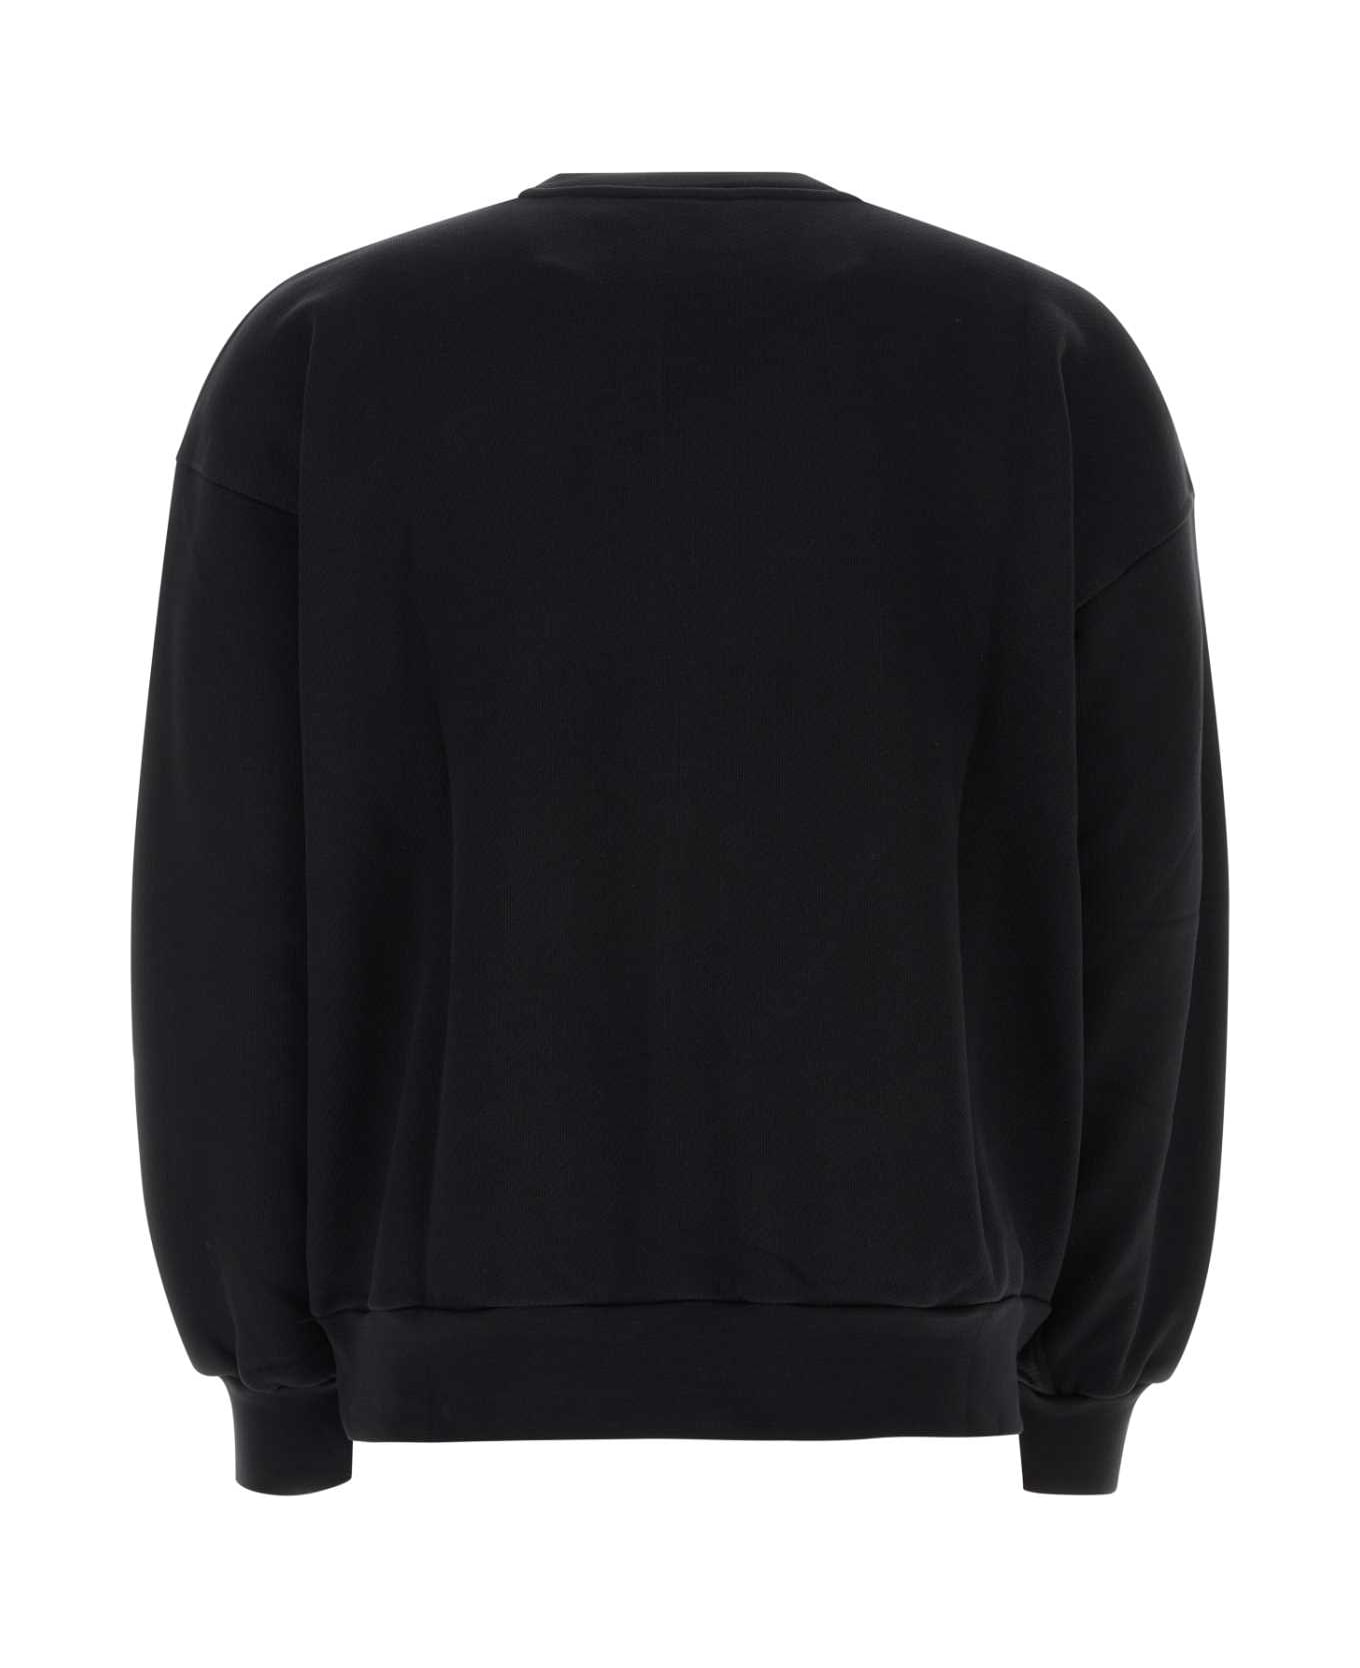 Botter Black Cotton Sweatshirt - BLACK CARIBBEAN COUTURE EMBR